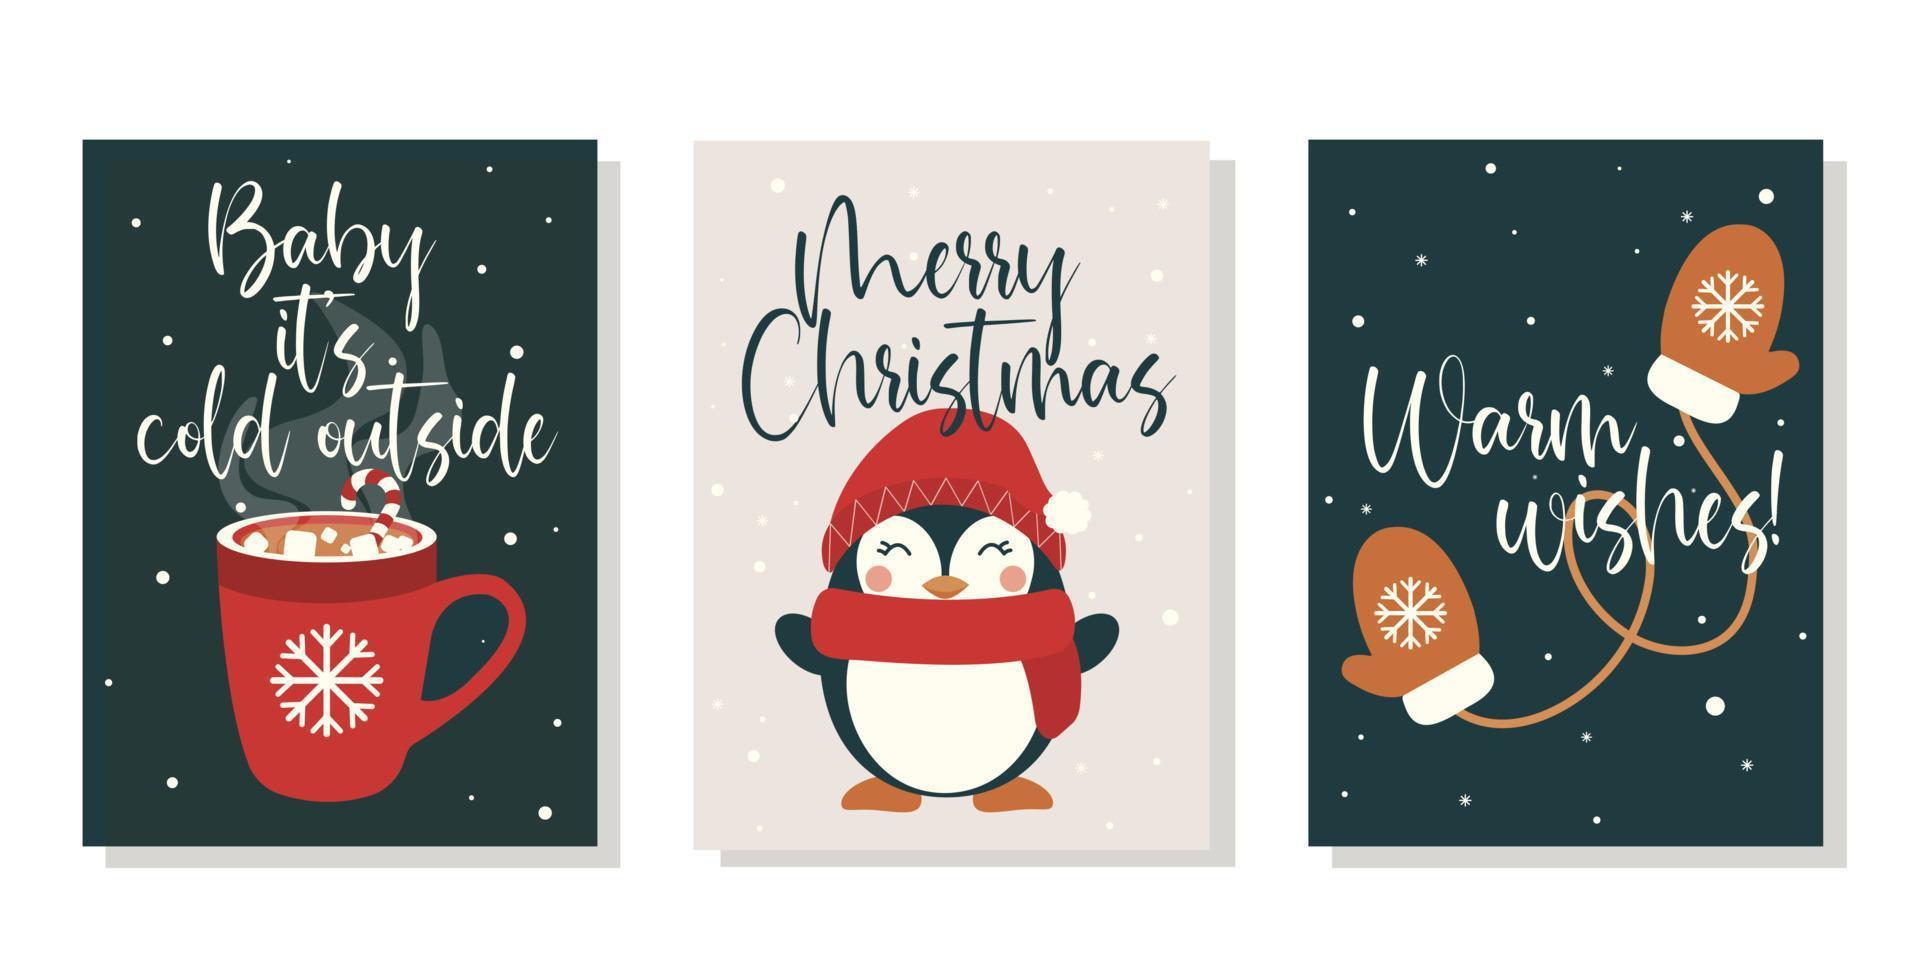 impostato di Natale, nuovo anno e inverno vacanze saluto carte vettore